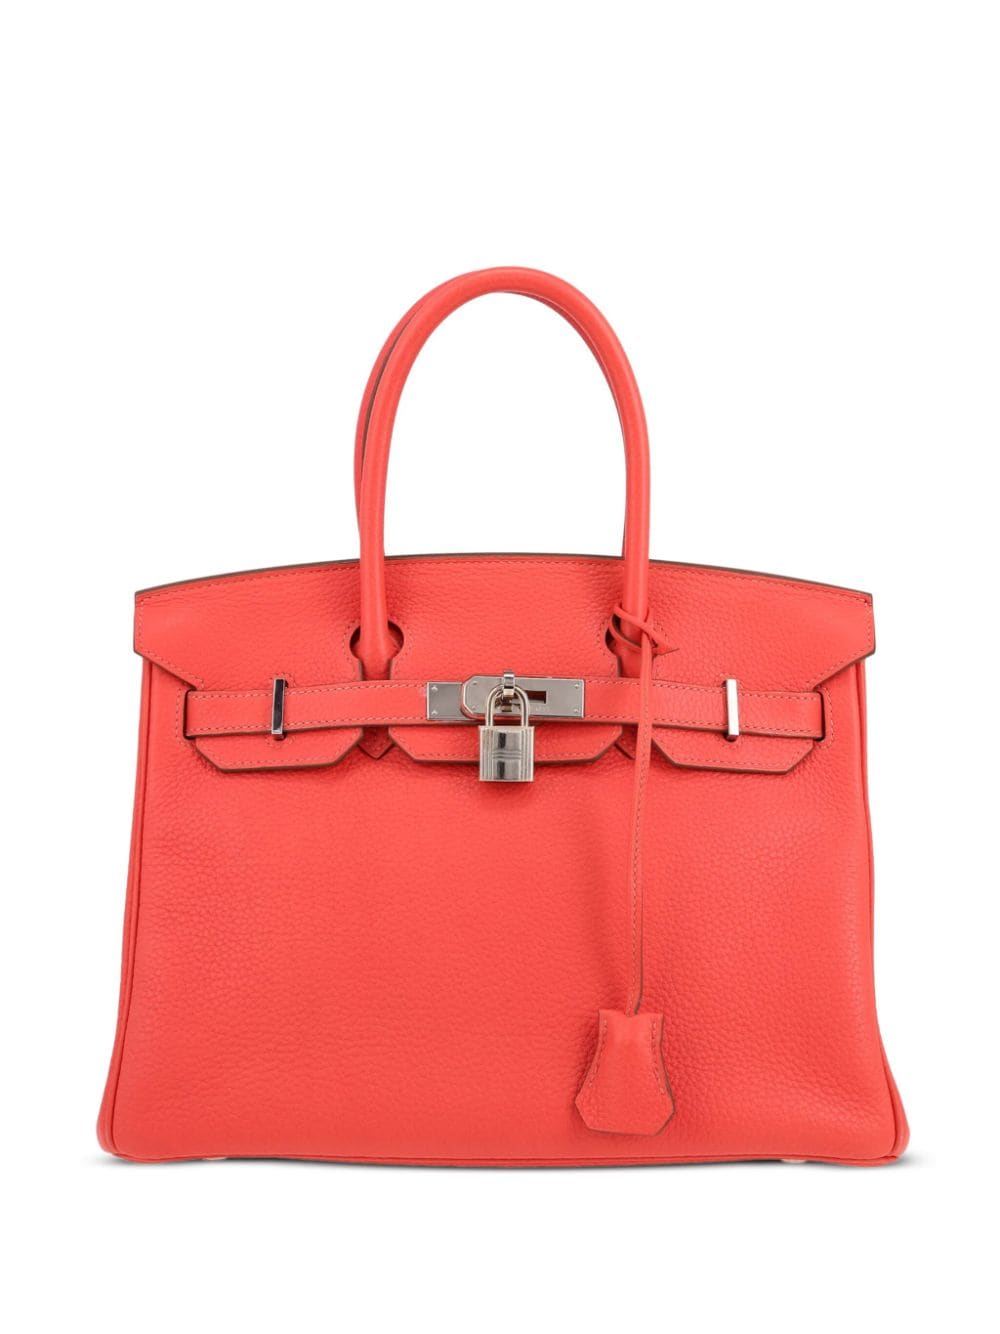 Pre-owned Hermes 2014 Birkin 30 Handbag In Pink